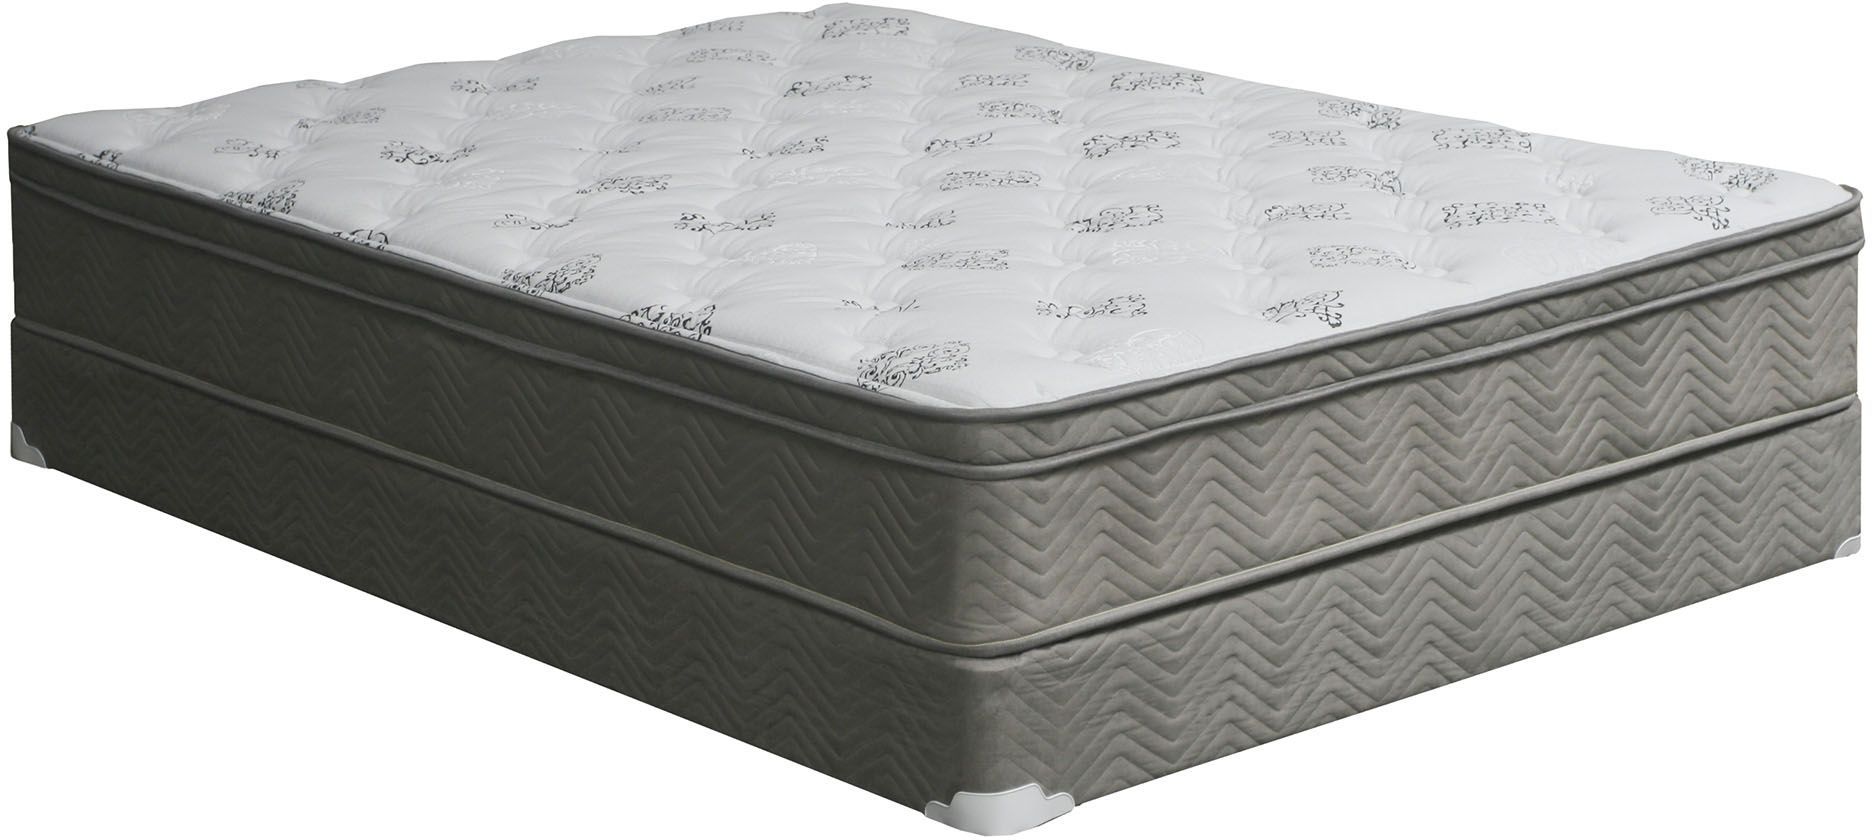 benish euro top queen mattress